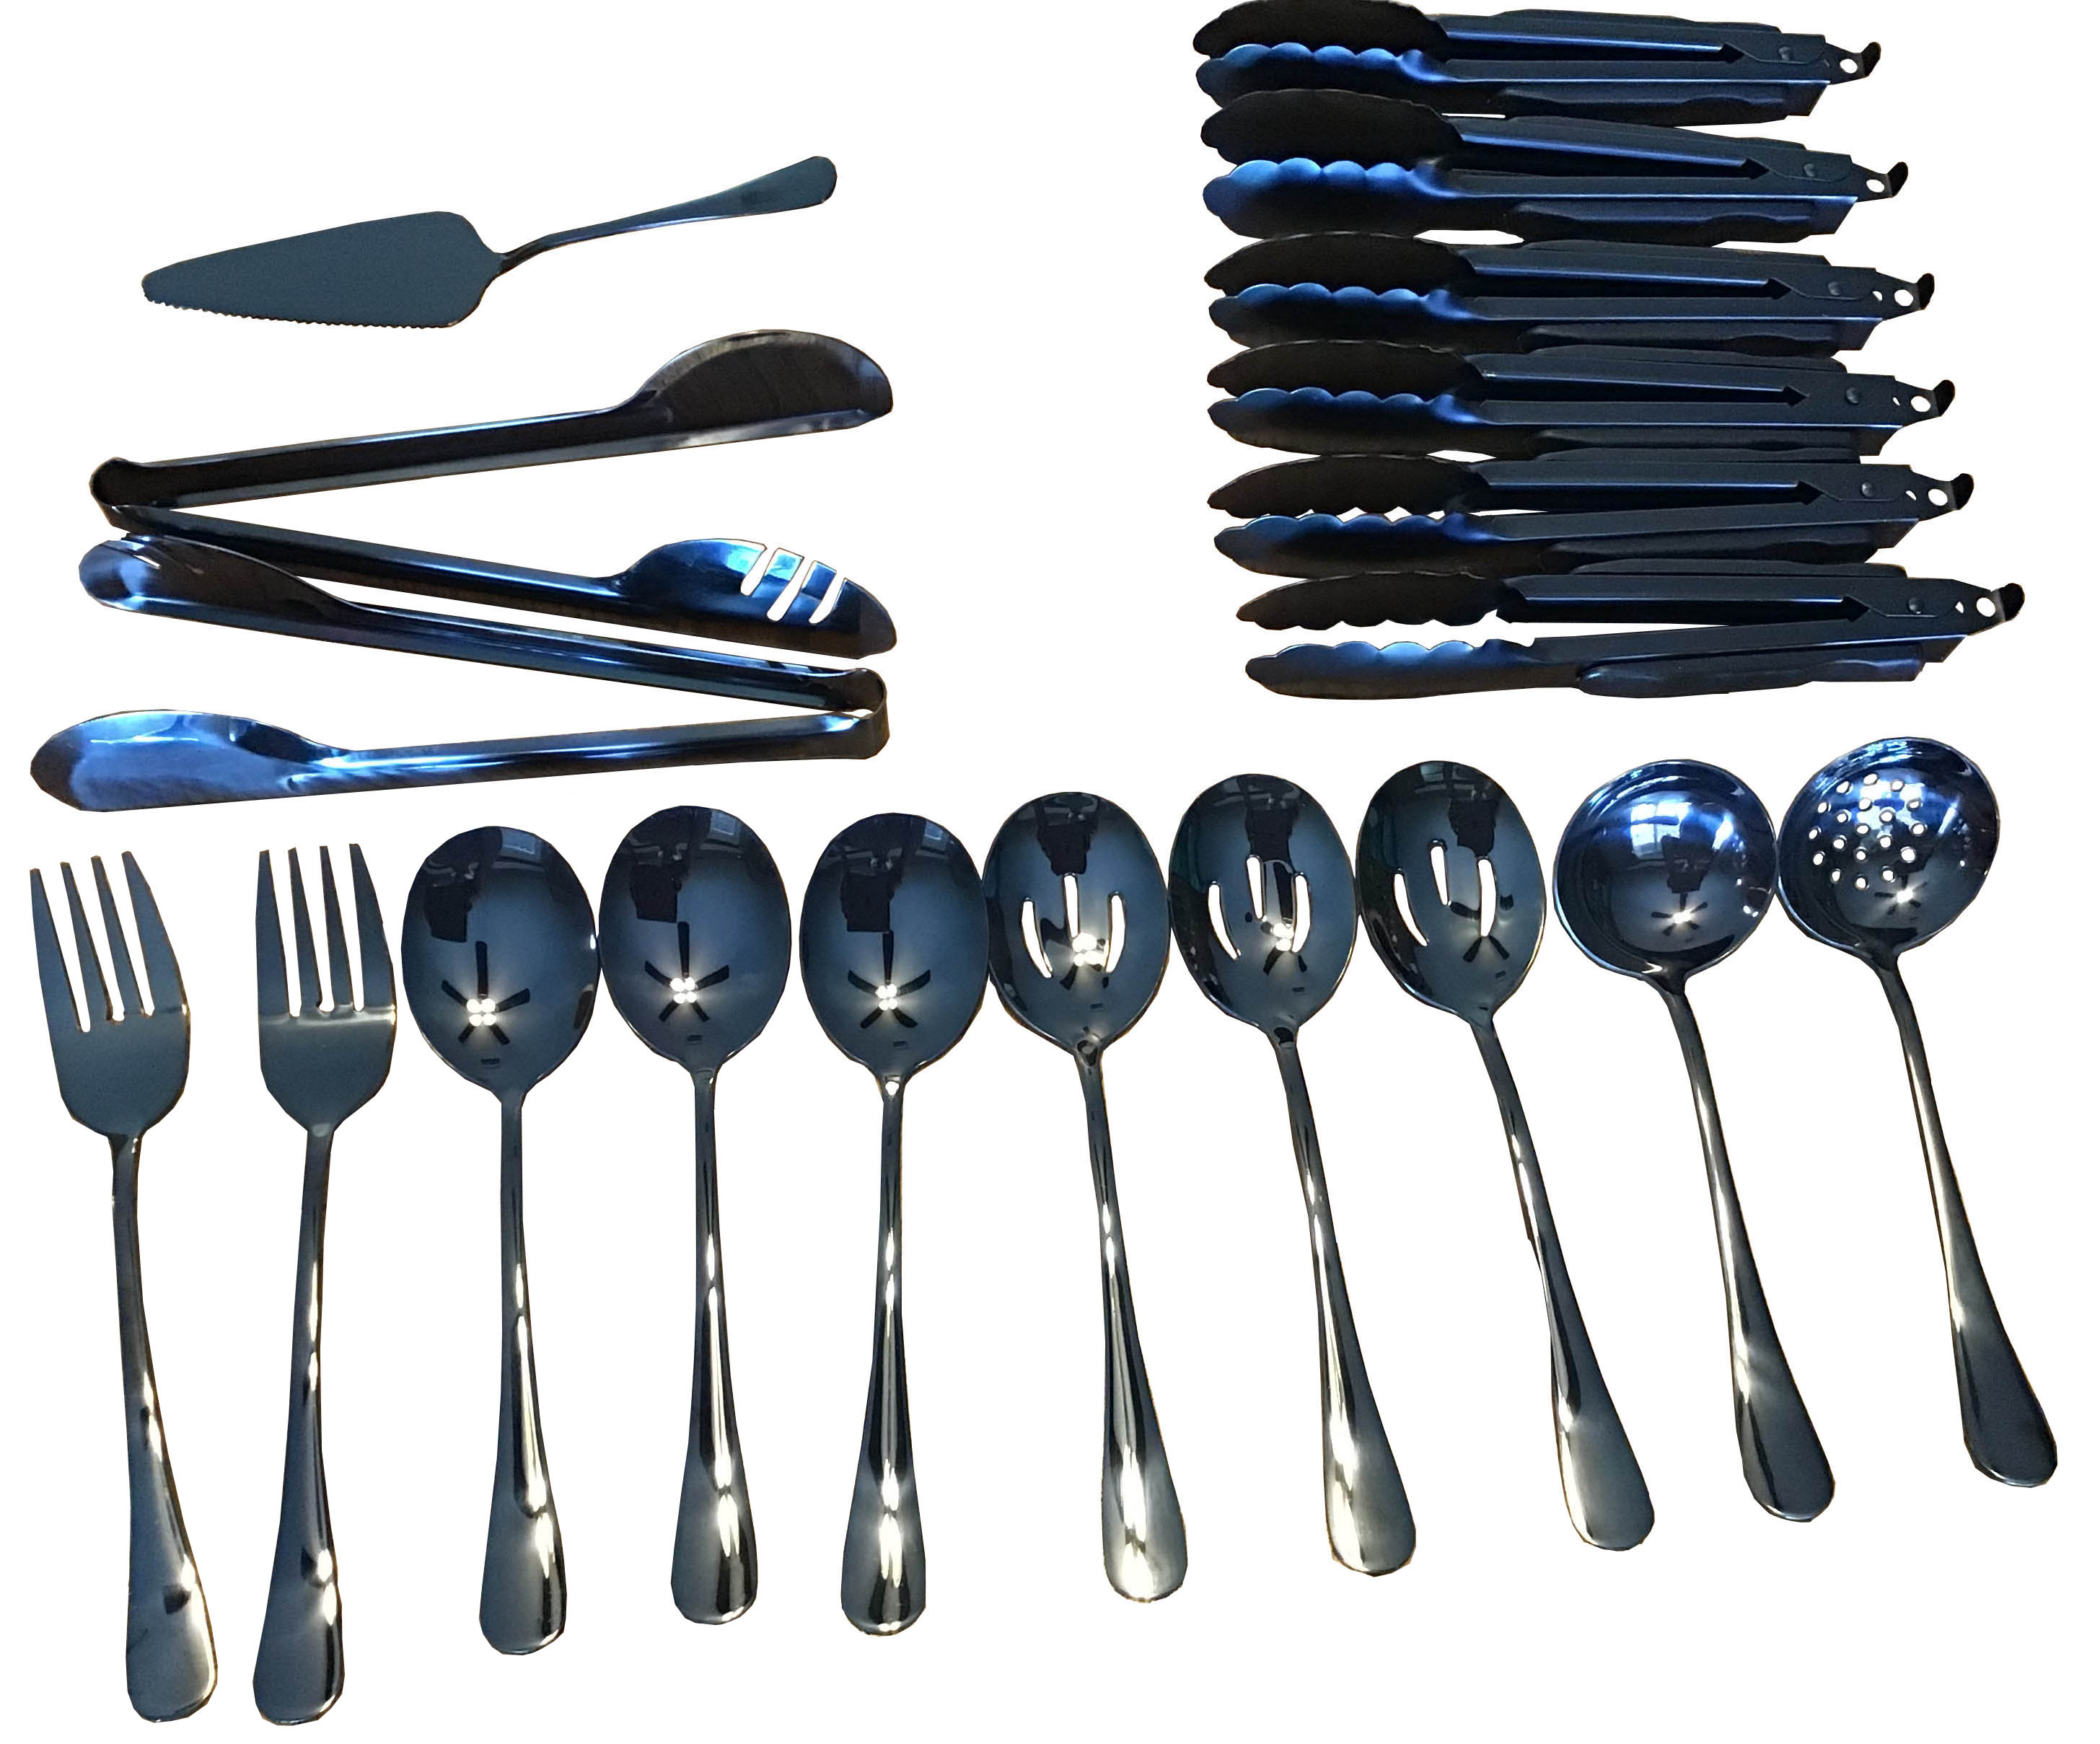 matched serving utensils set